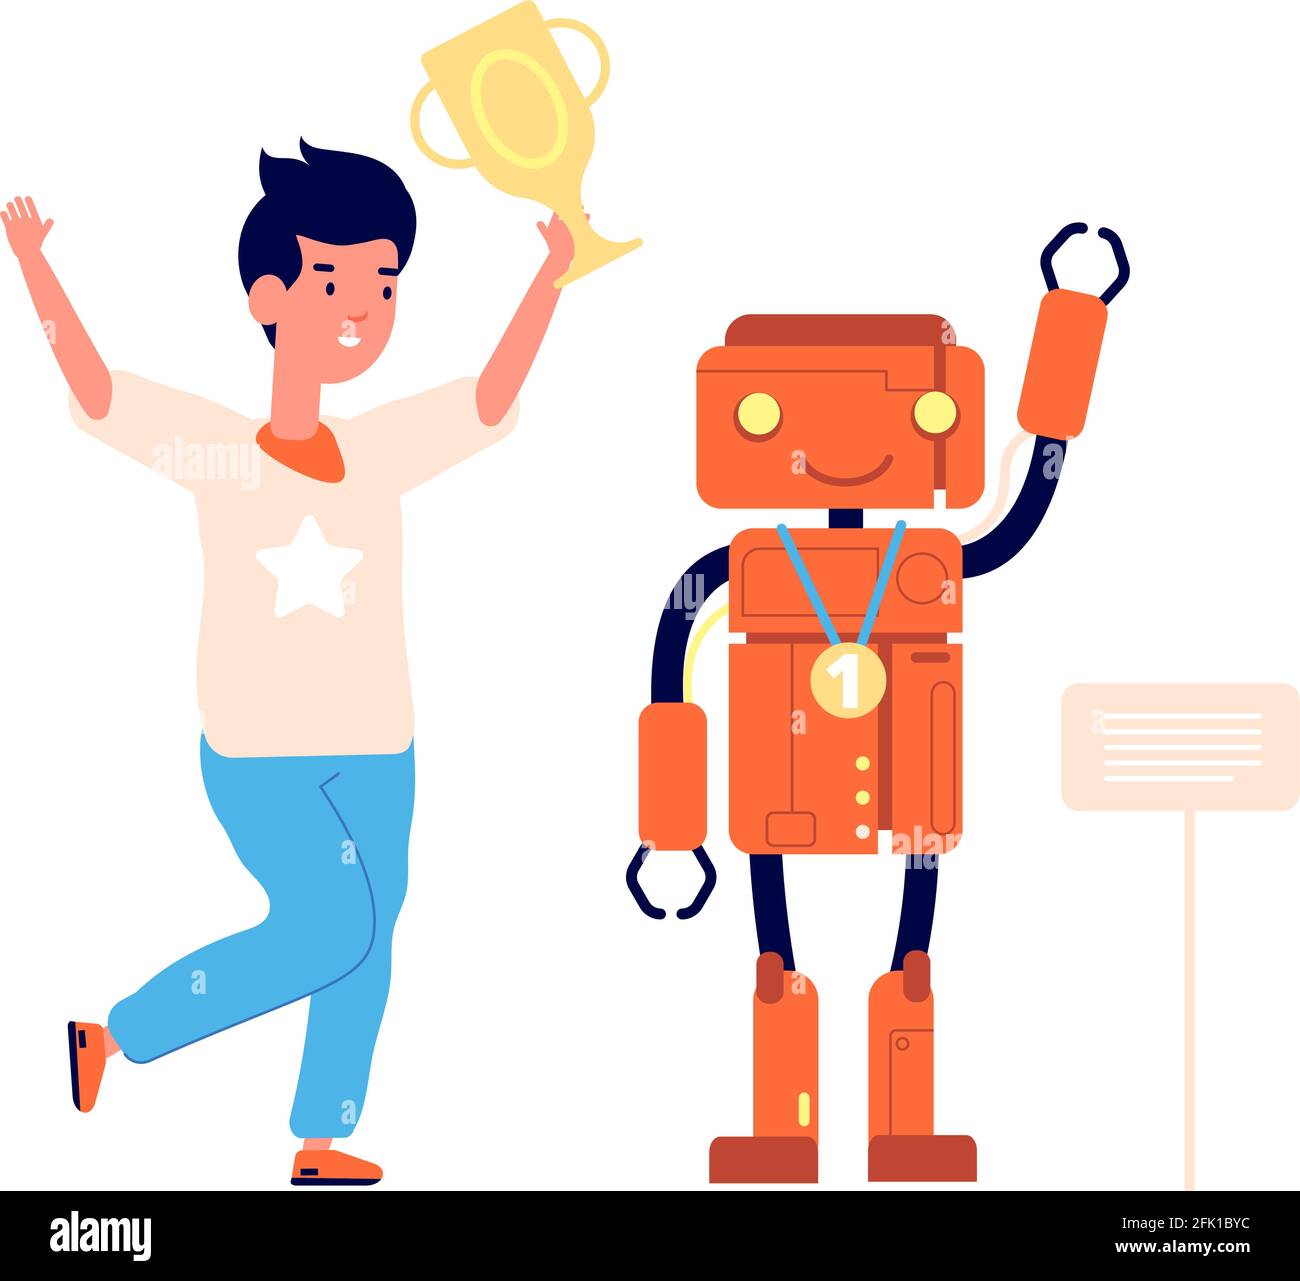 Kind und Roboter. Schüler Roboter-Wettbewerb, Schule Programmierung Projekt. Kids Award, junge Ingenieur machen elektronische Spielzeug Vektor Illustration Stock Vektor